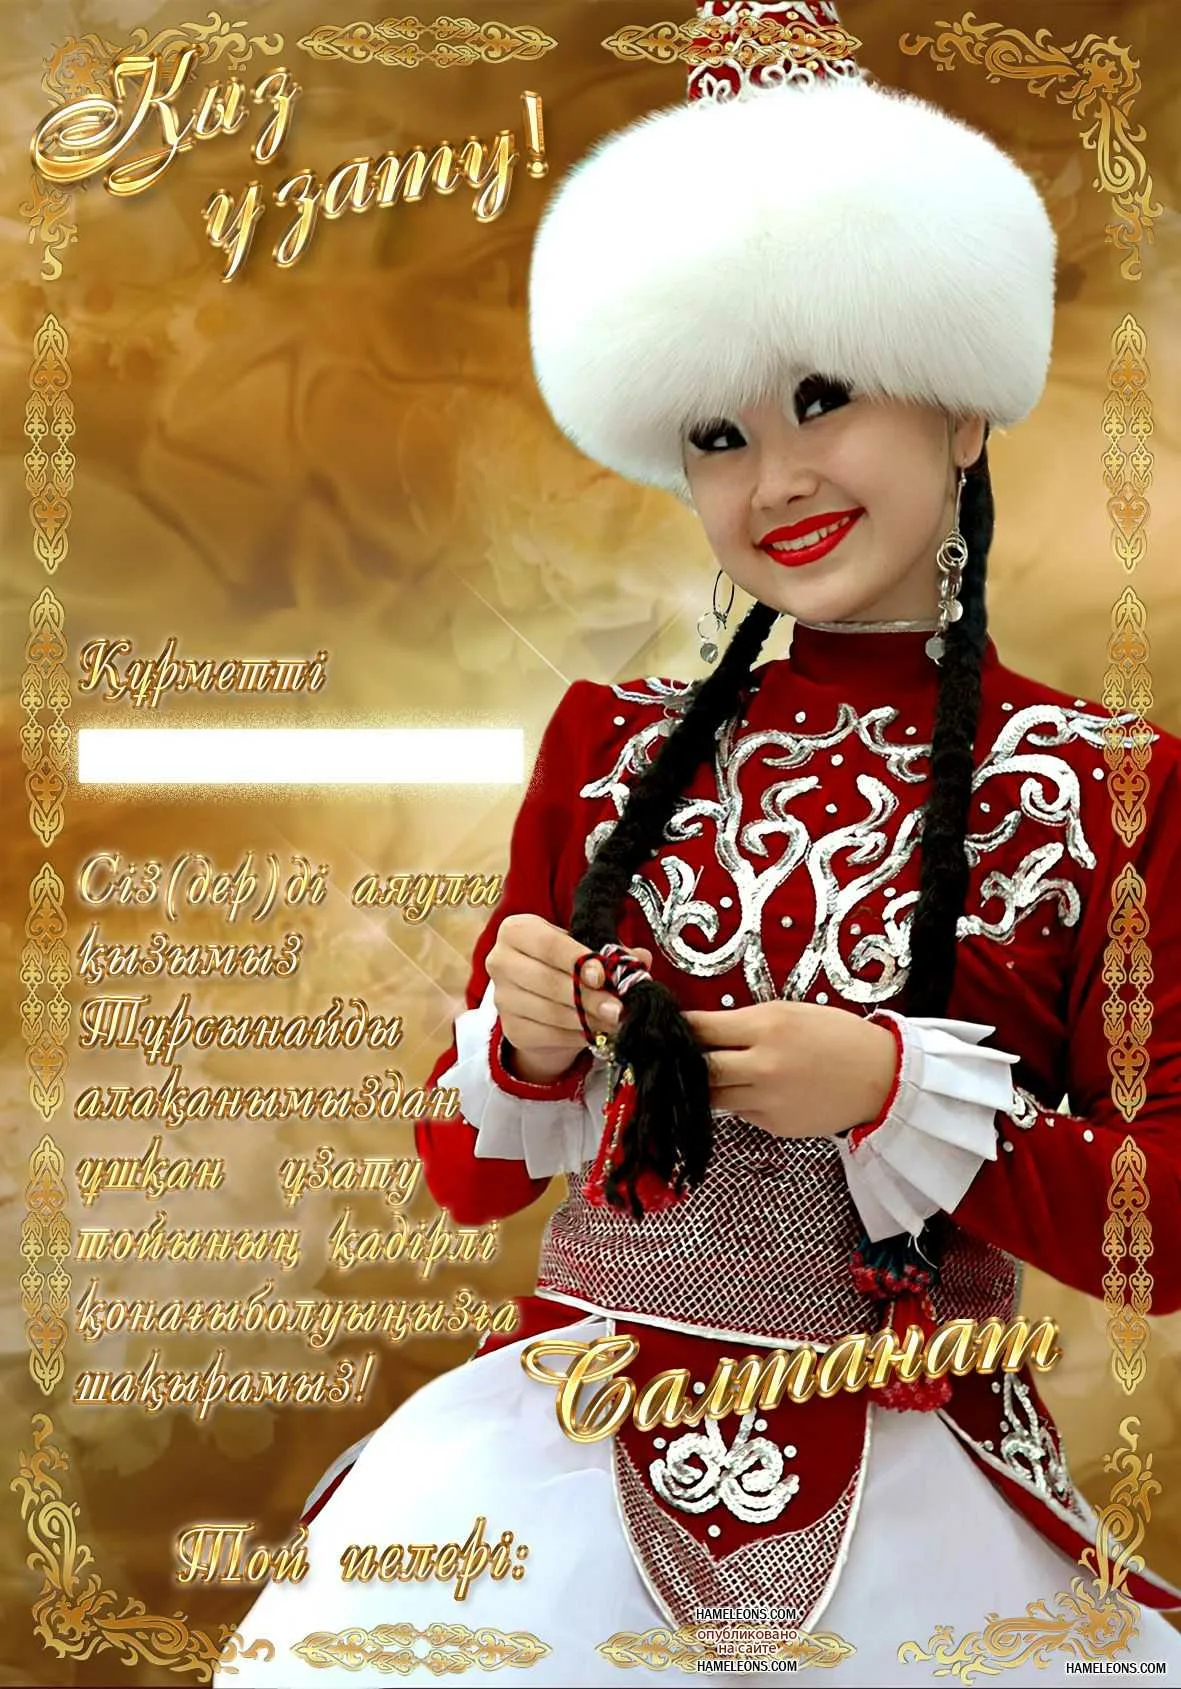 Фото Поздравления с днем рождения на казахском языке #9